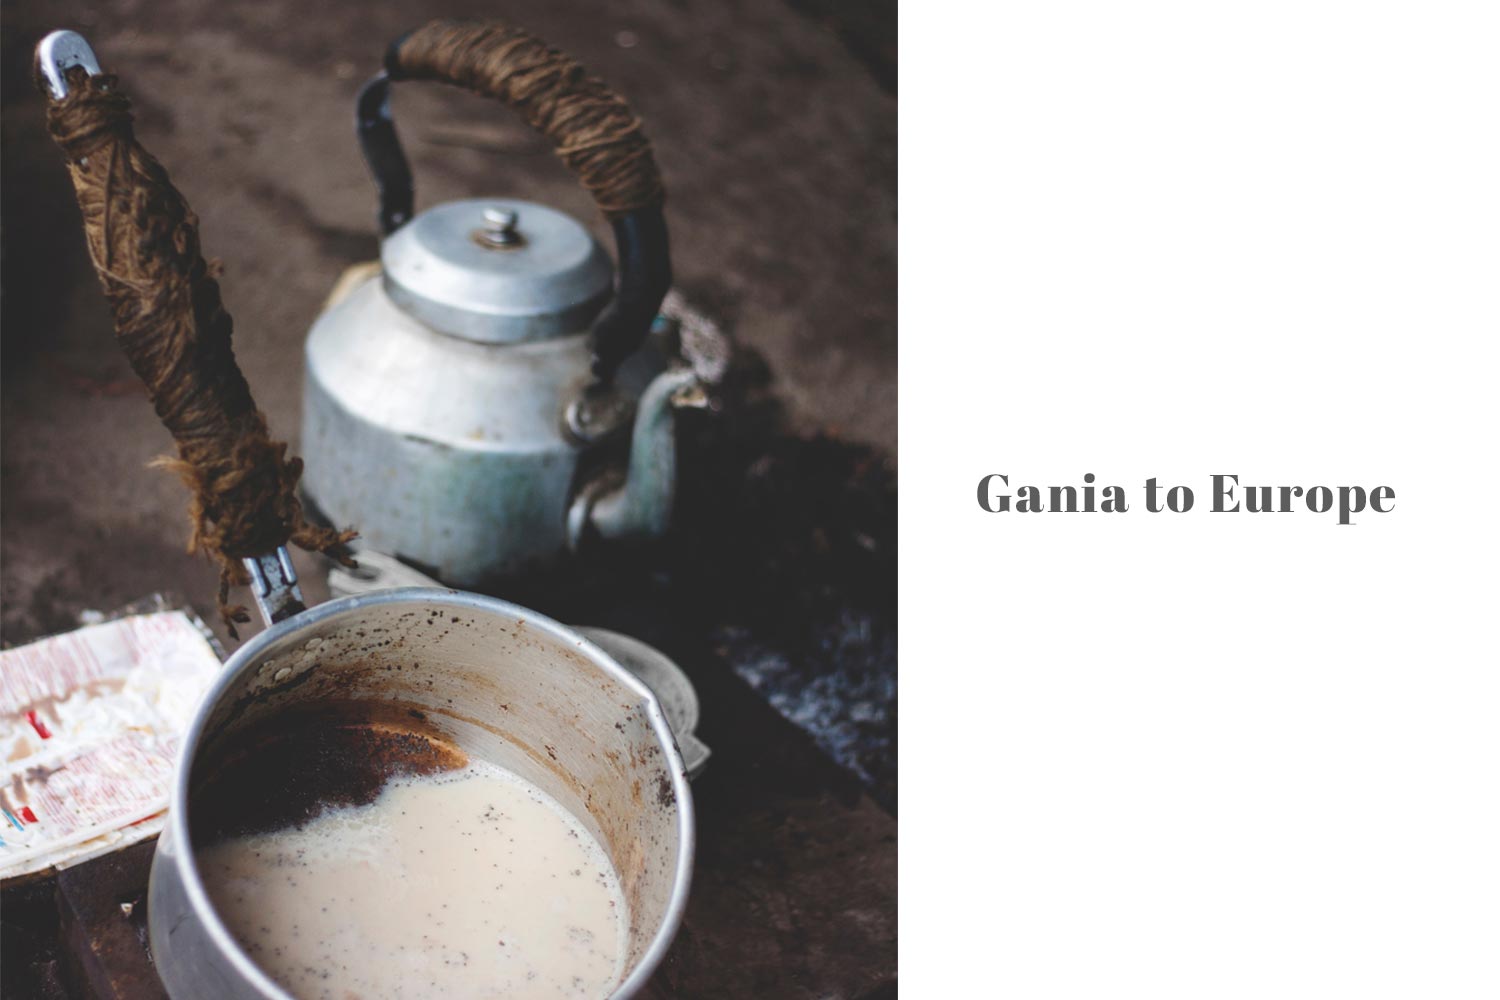 Gania to Europe by Achyuta Samanta, Shesha Deba, Tutu danga